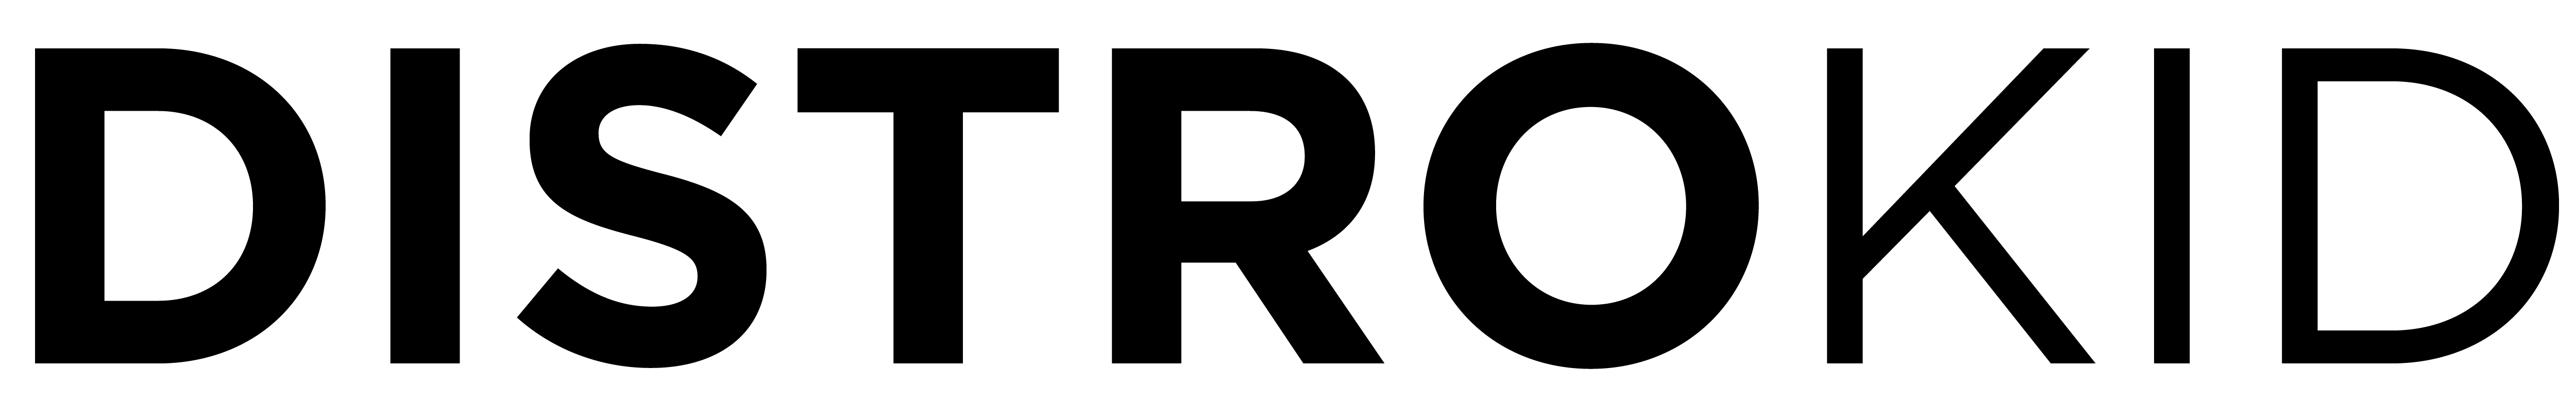 Logo preto do DistroKid